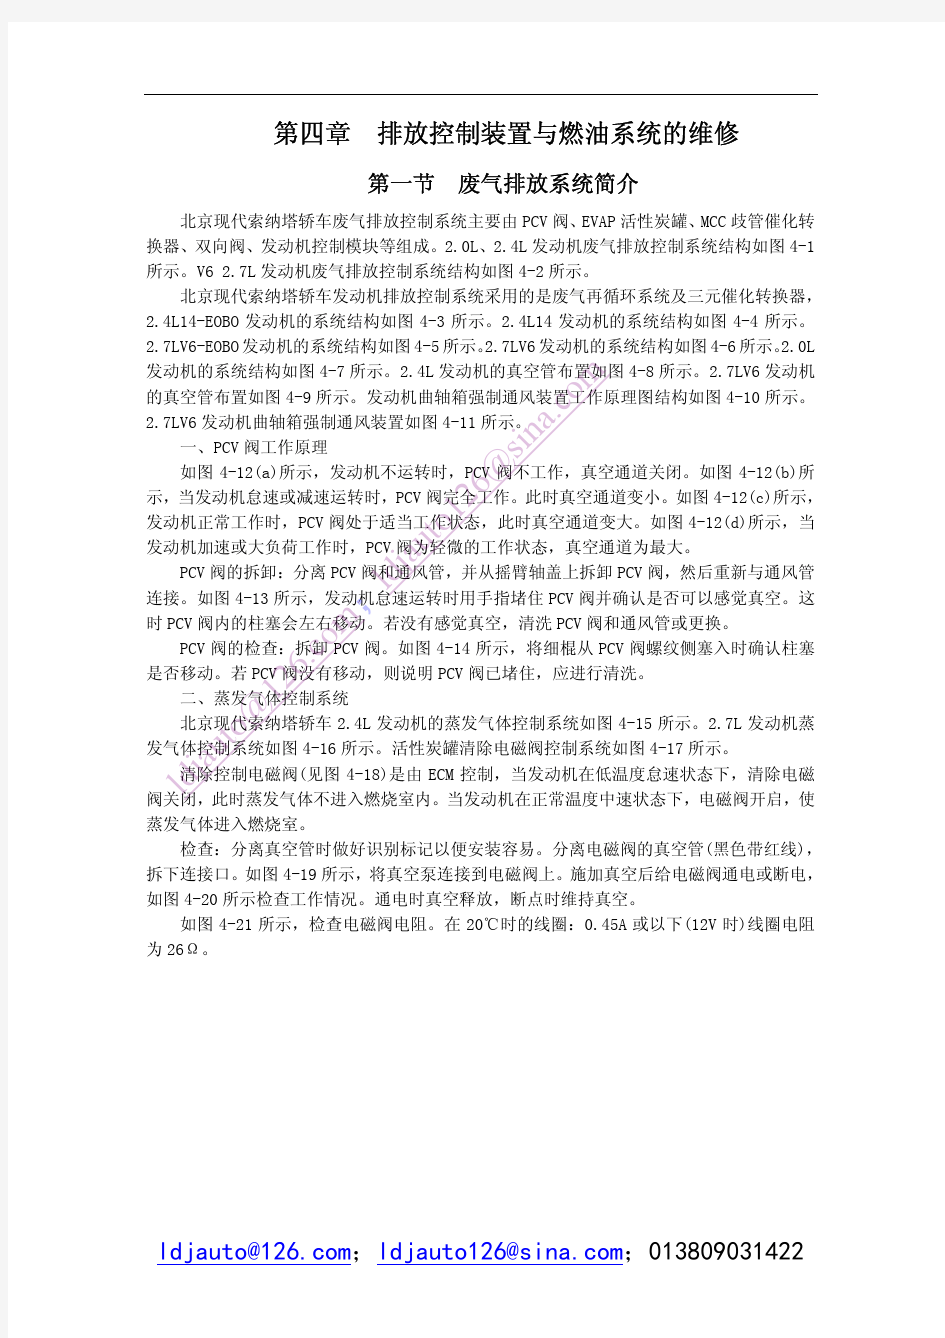 北京现代索纳塔维修手册_0161-0200